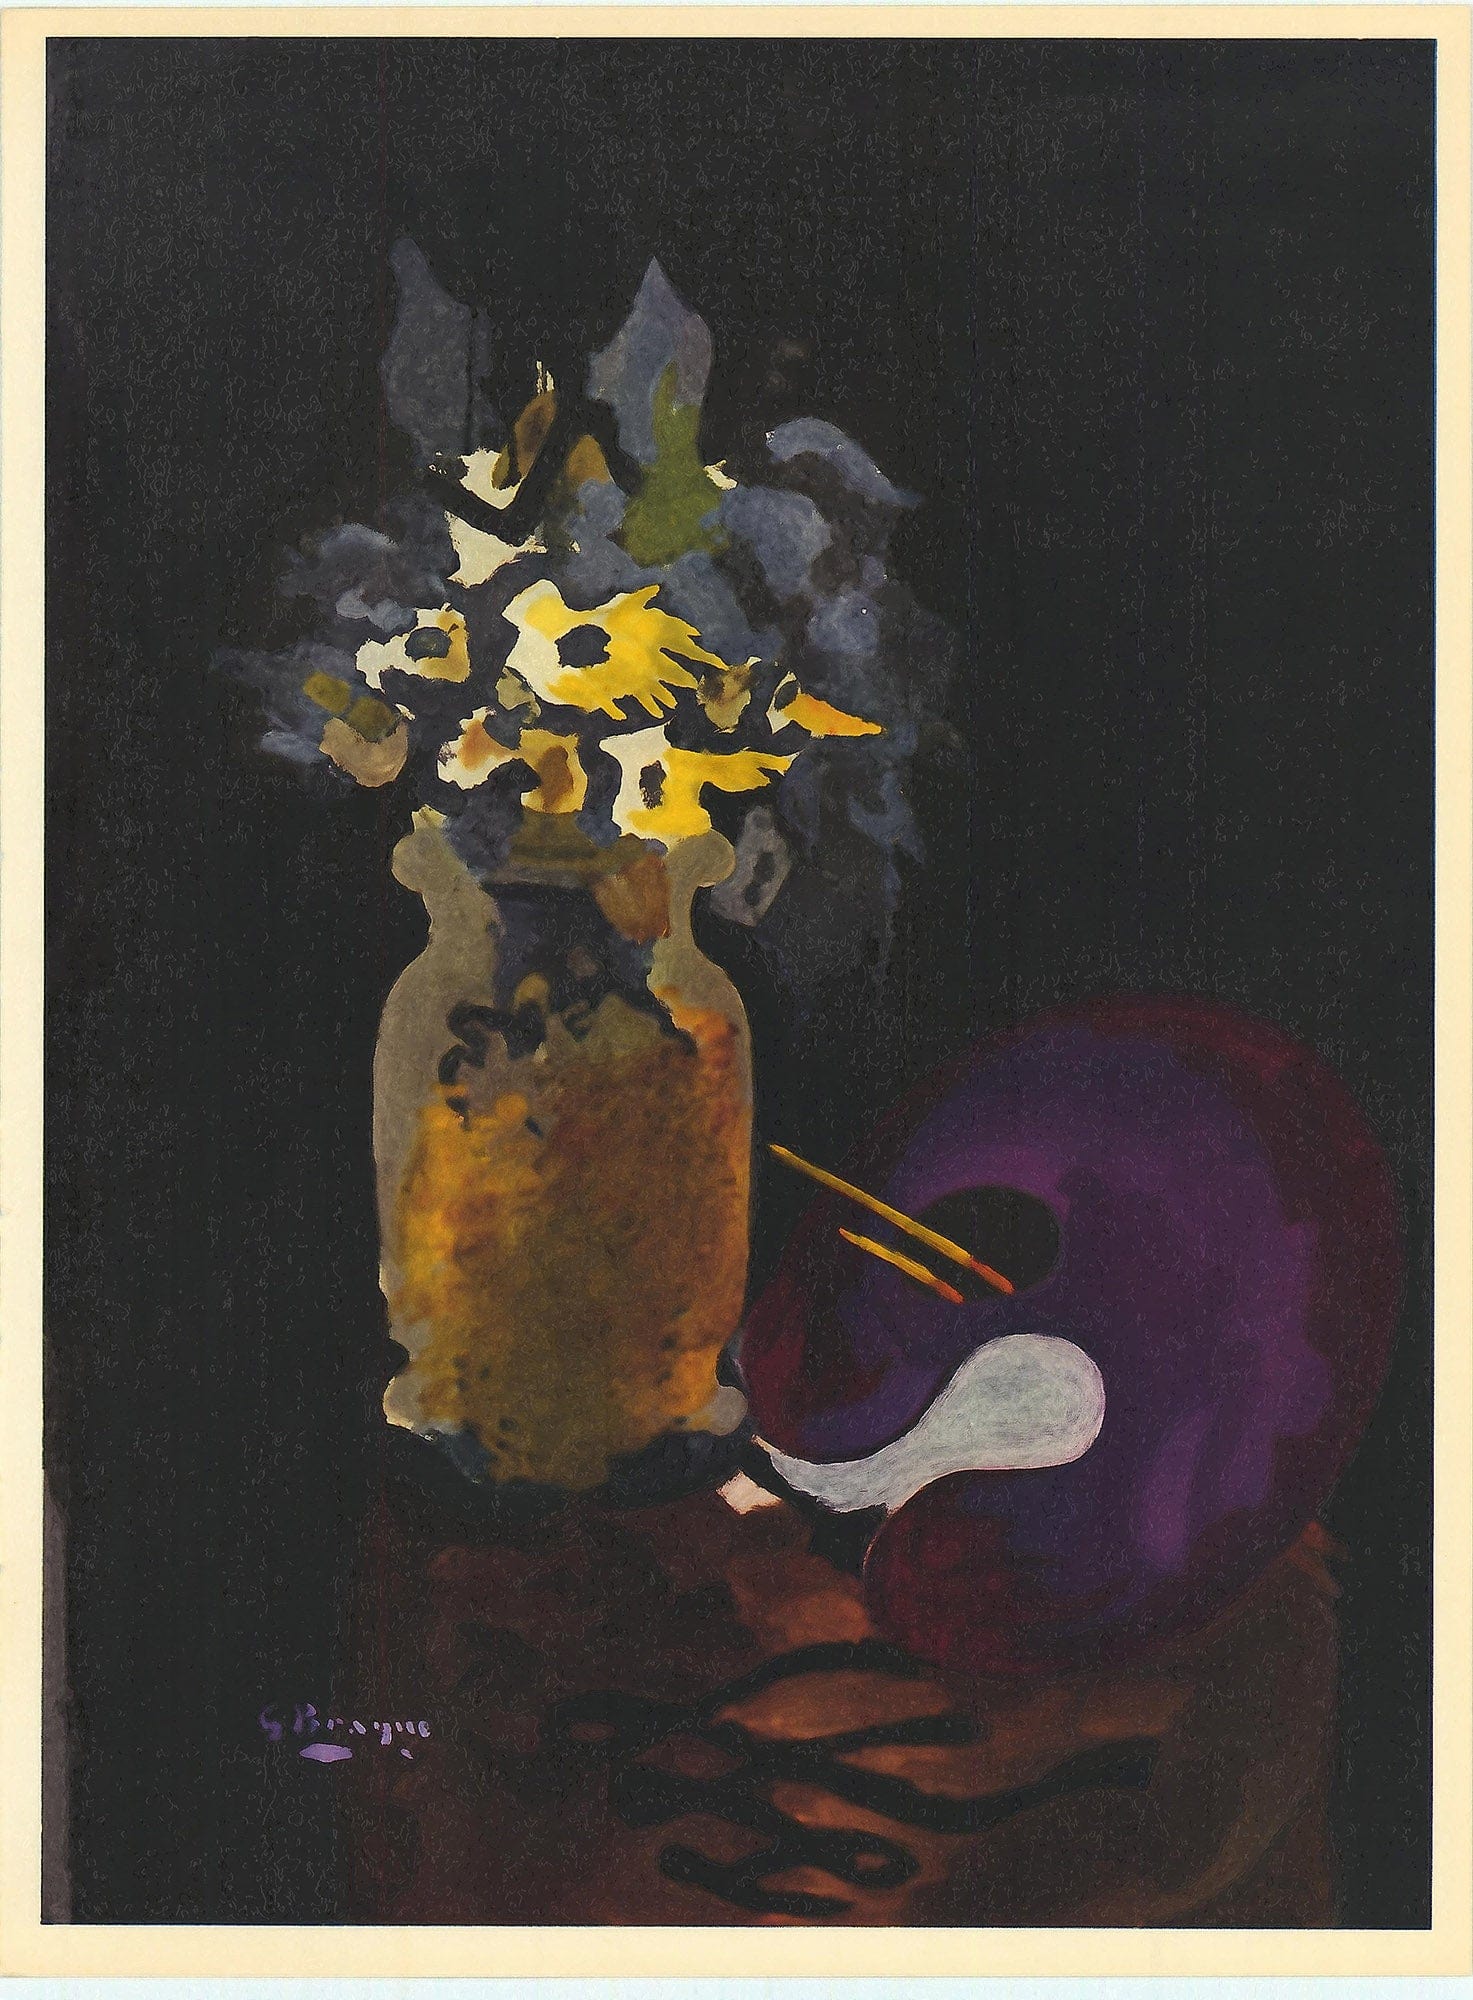 Georges Braque, "Untitled XIX" ZOOM Vol. 8 No. 31 ET 32 lithograph verve